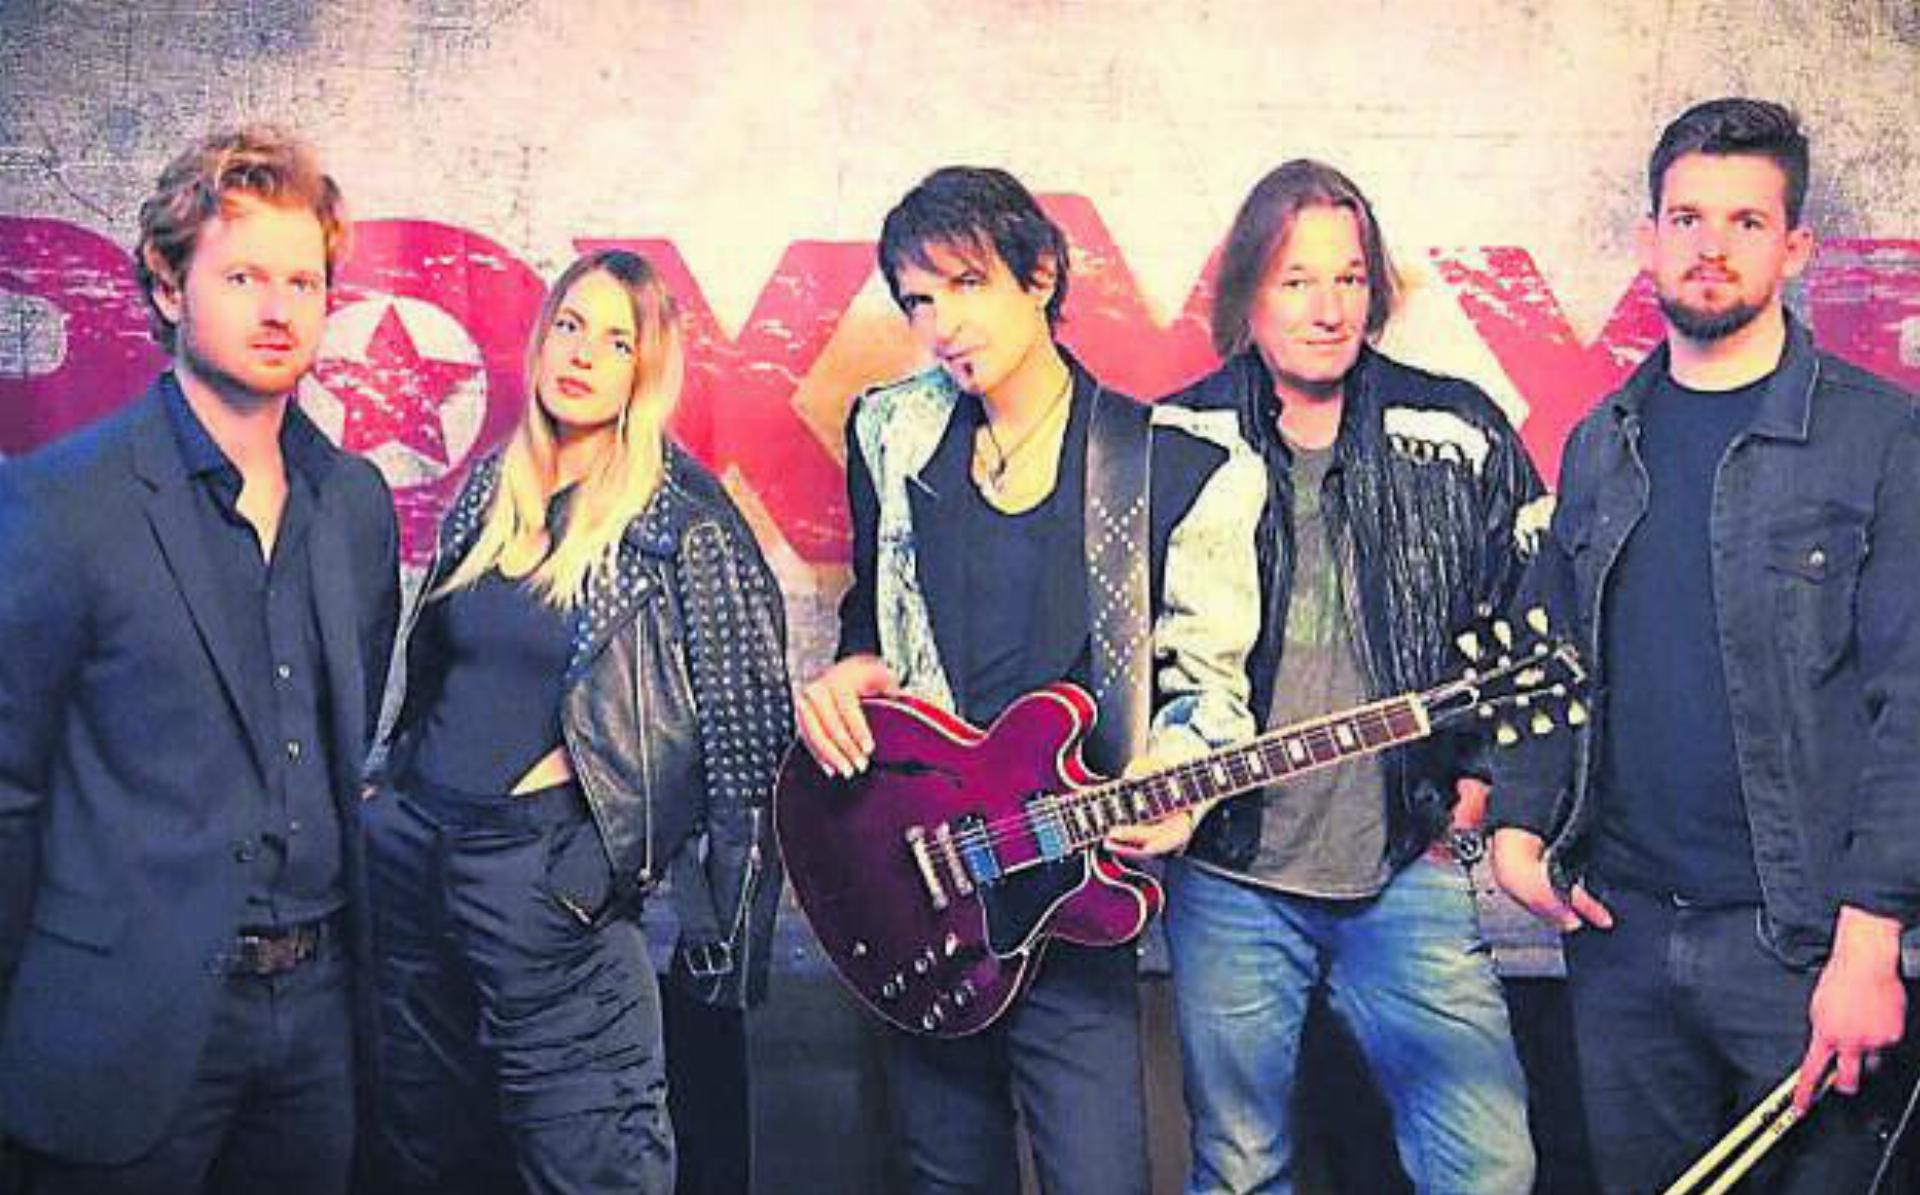 Die Band RoxXxet bringt grosse Hits von Roxette nach Boswil. Bild: zg